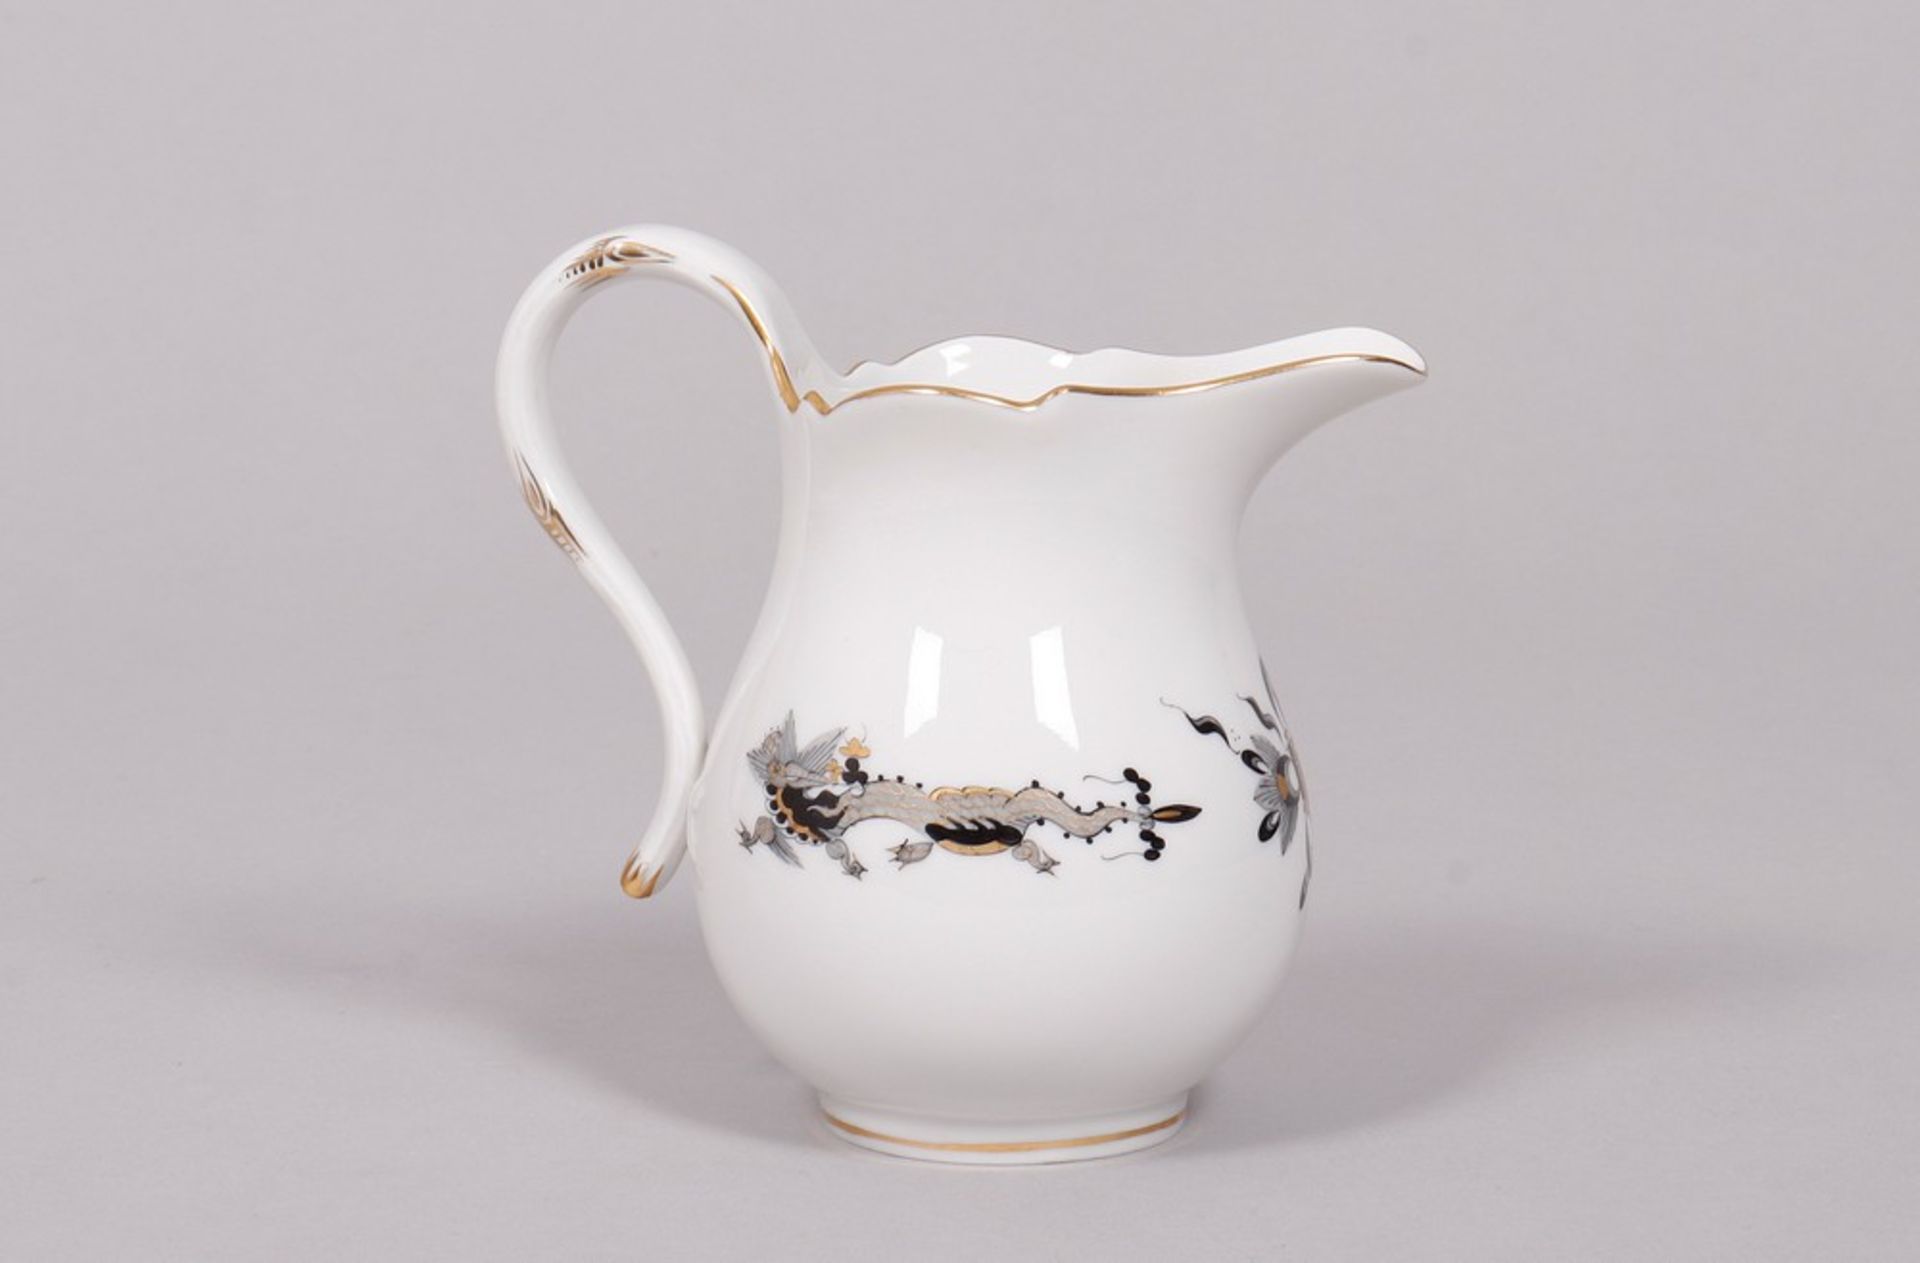 Cream jug, Meissen, form "Neuer Ausschnitt", dekor "Schwarzer Hofdrache", 20th C. - Image 3 of 5